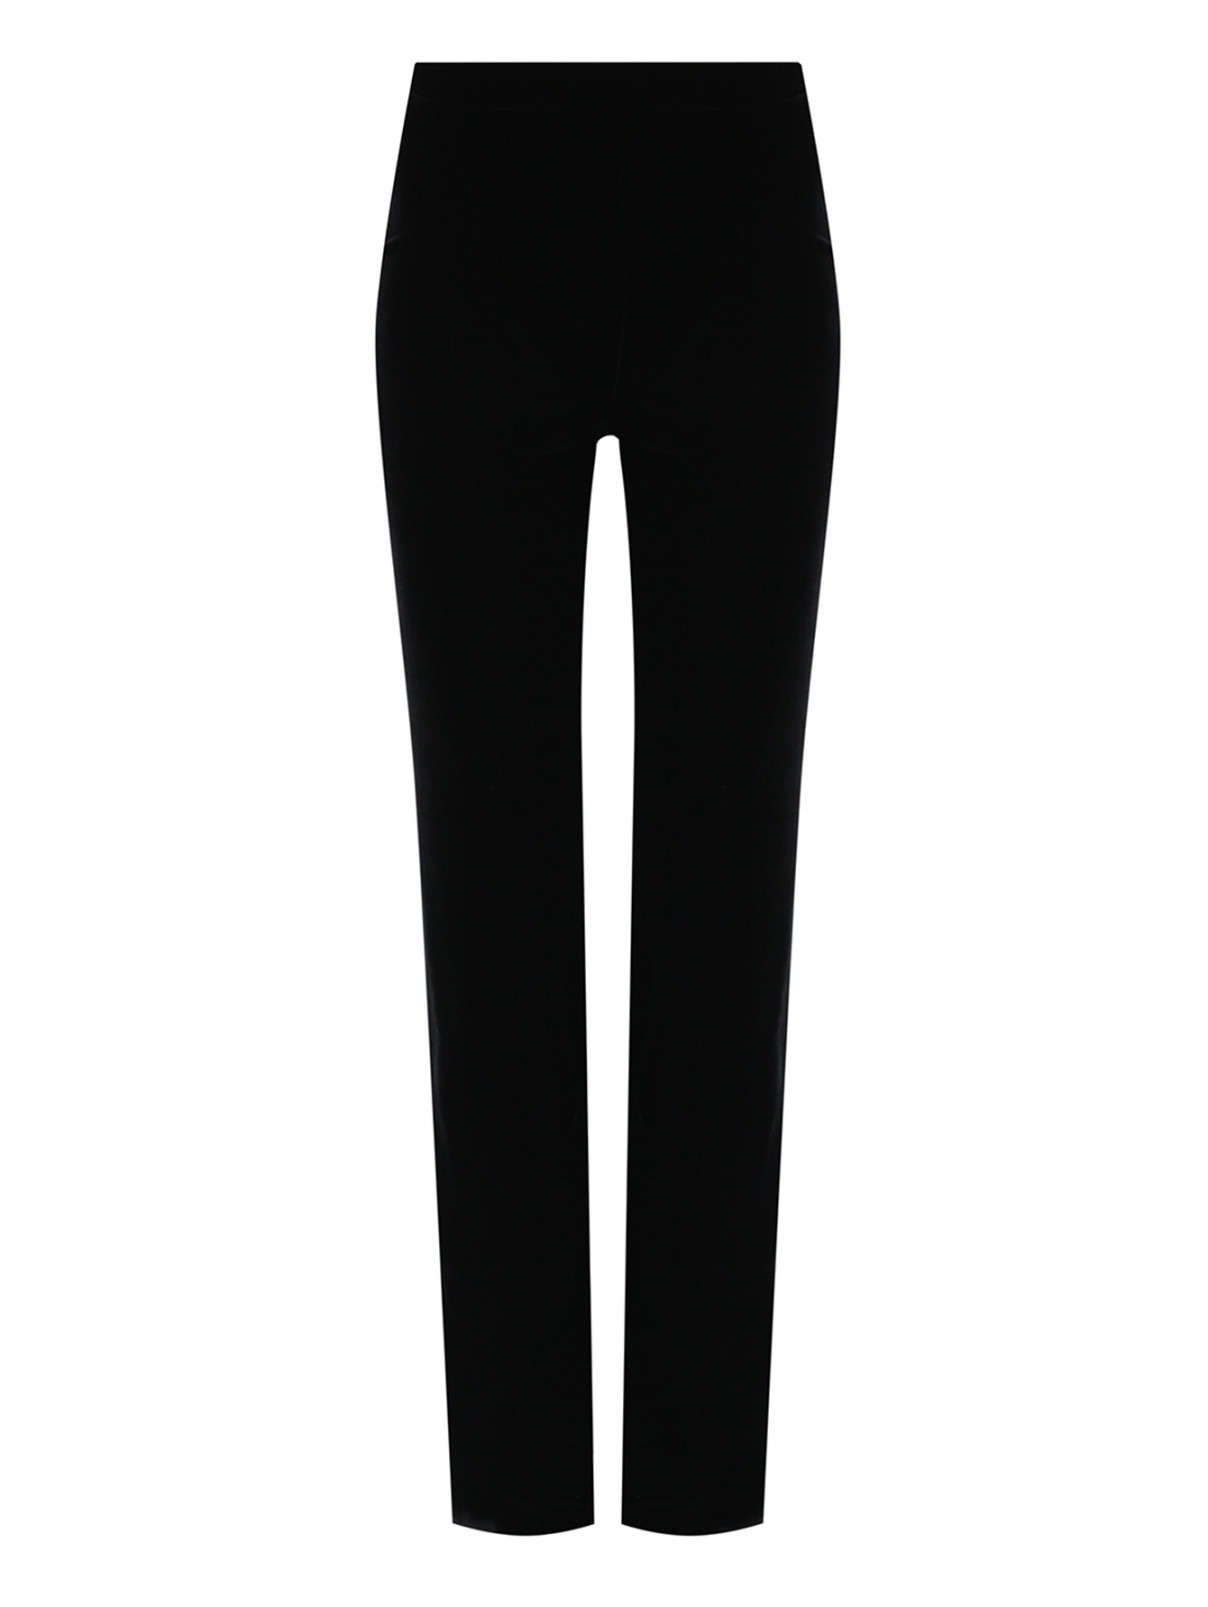 Однотонные брюки из вискозы и шелка Moschino Boutique  –  Общий вид  – Цвет:  Черный